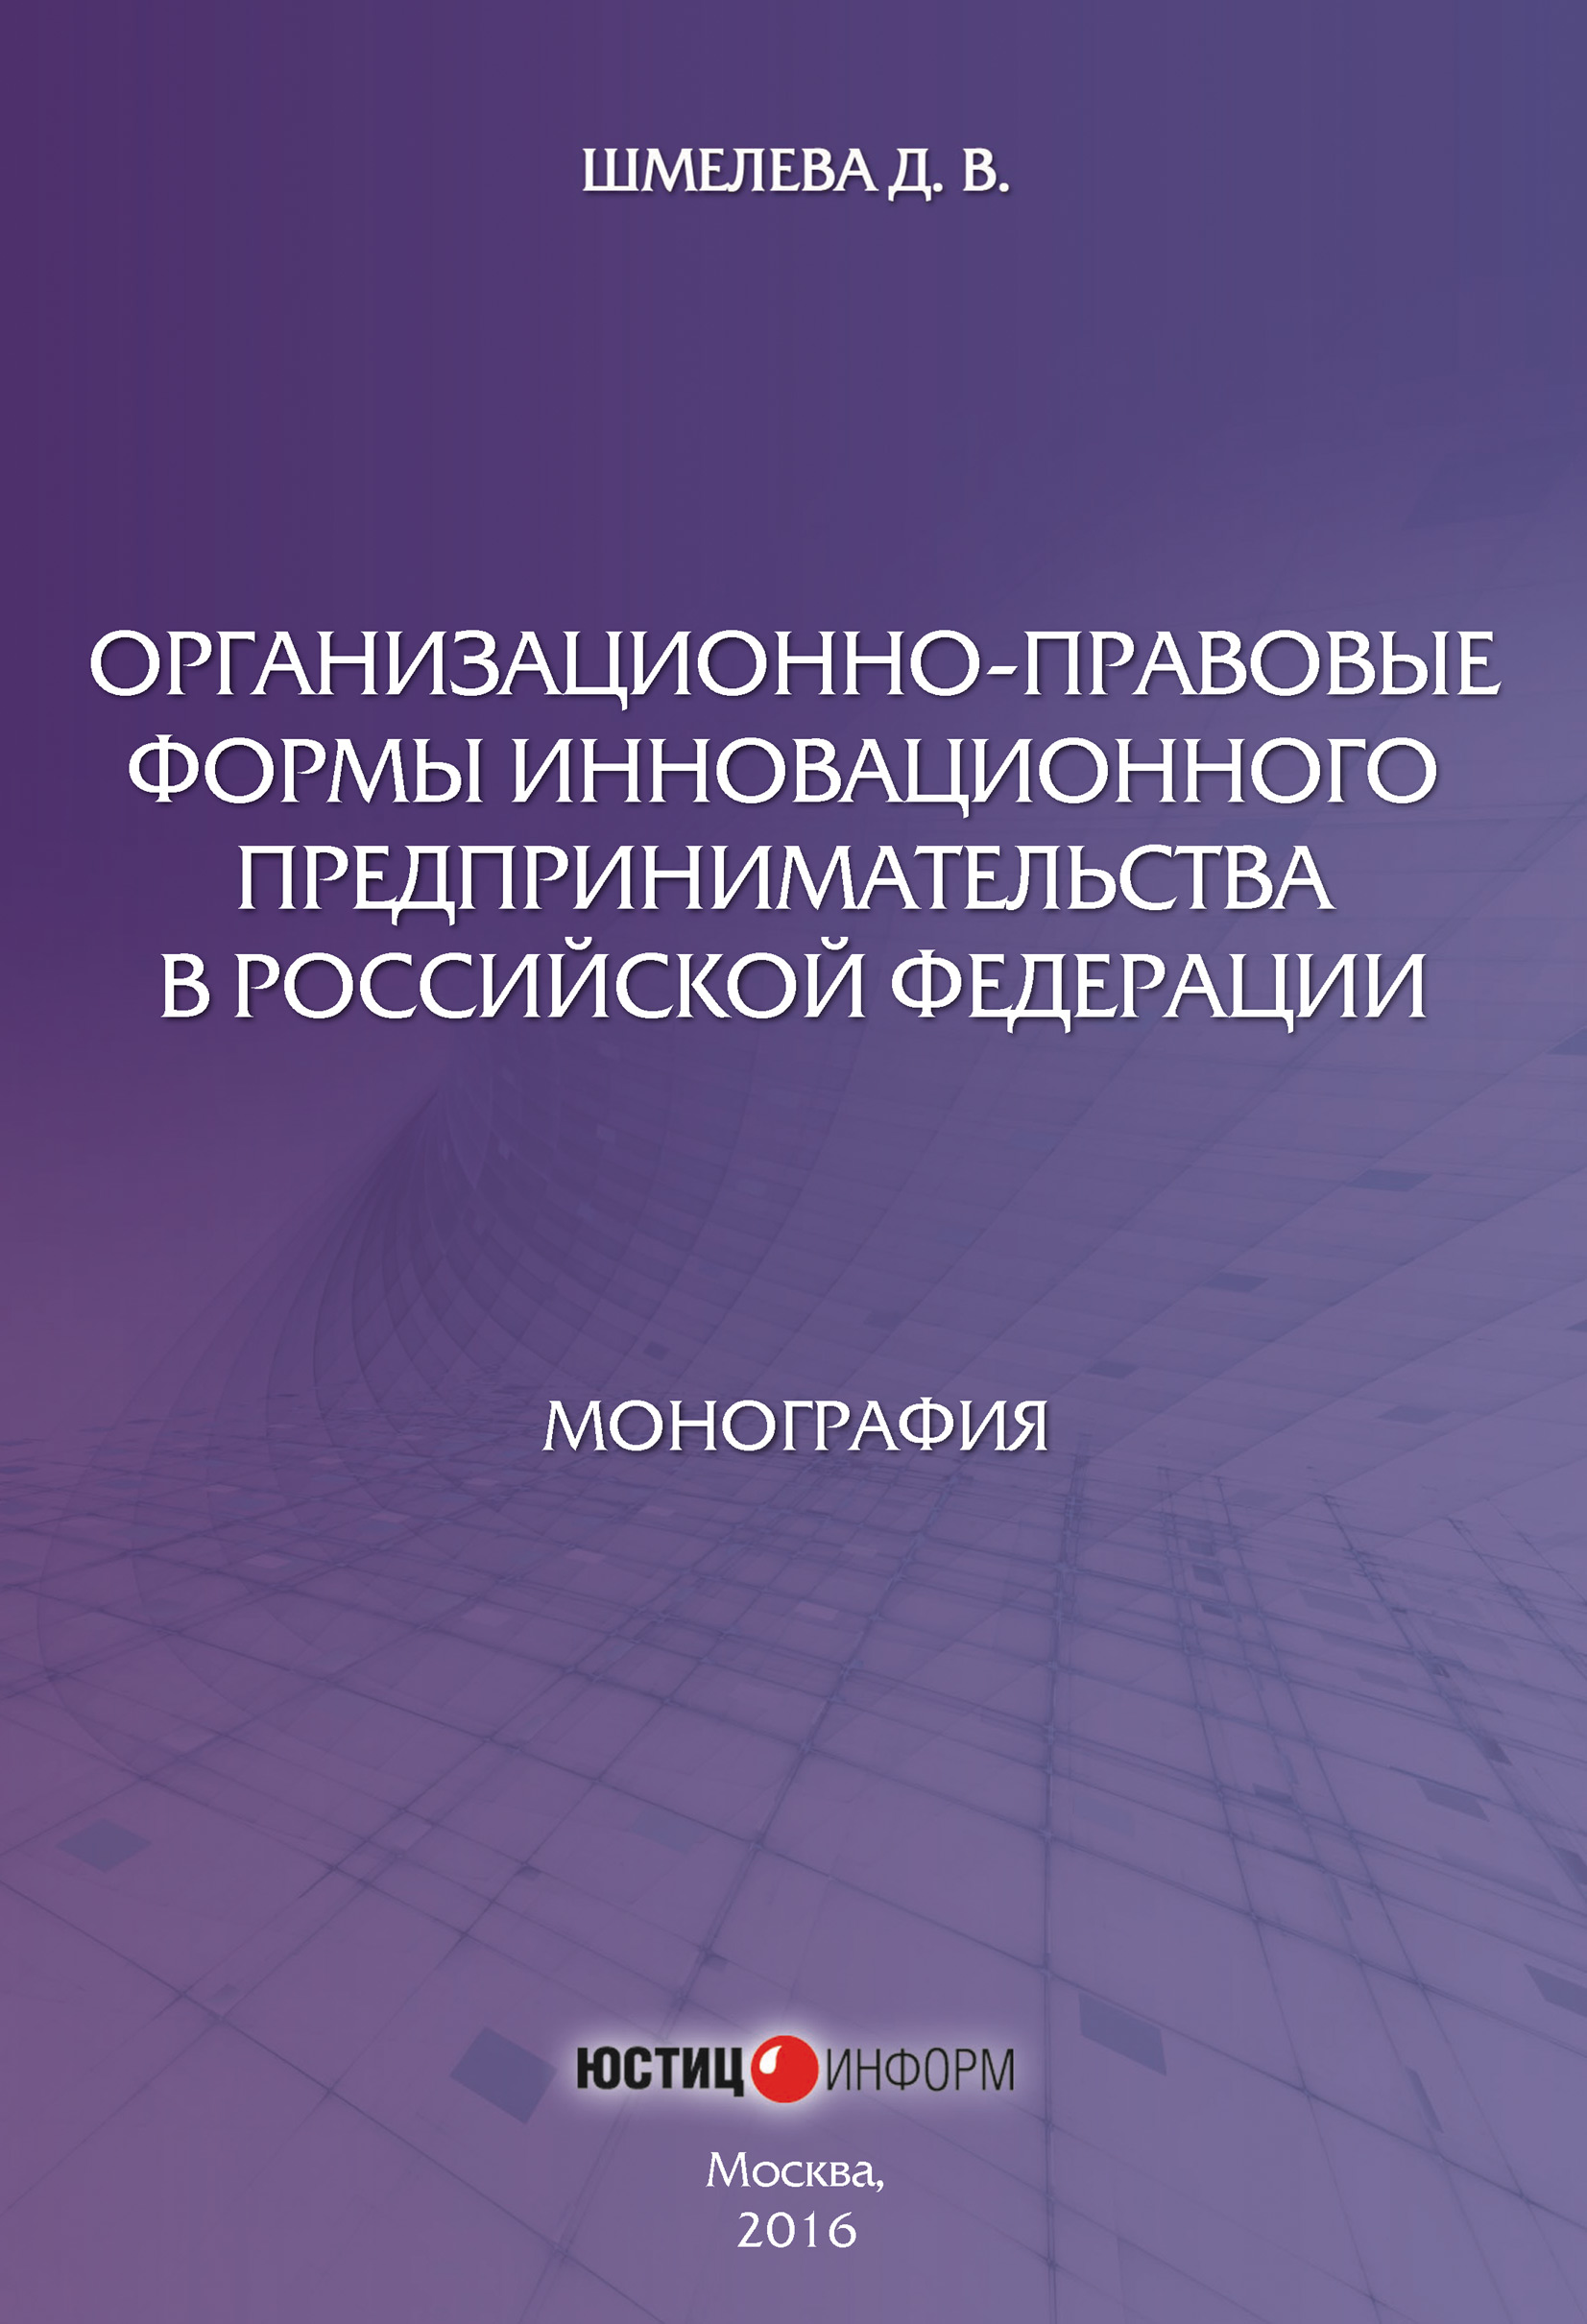 Организационно-правовые формы инновационного предпринимательства в Российской Федерации